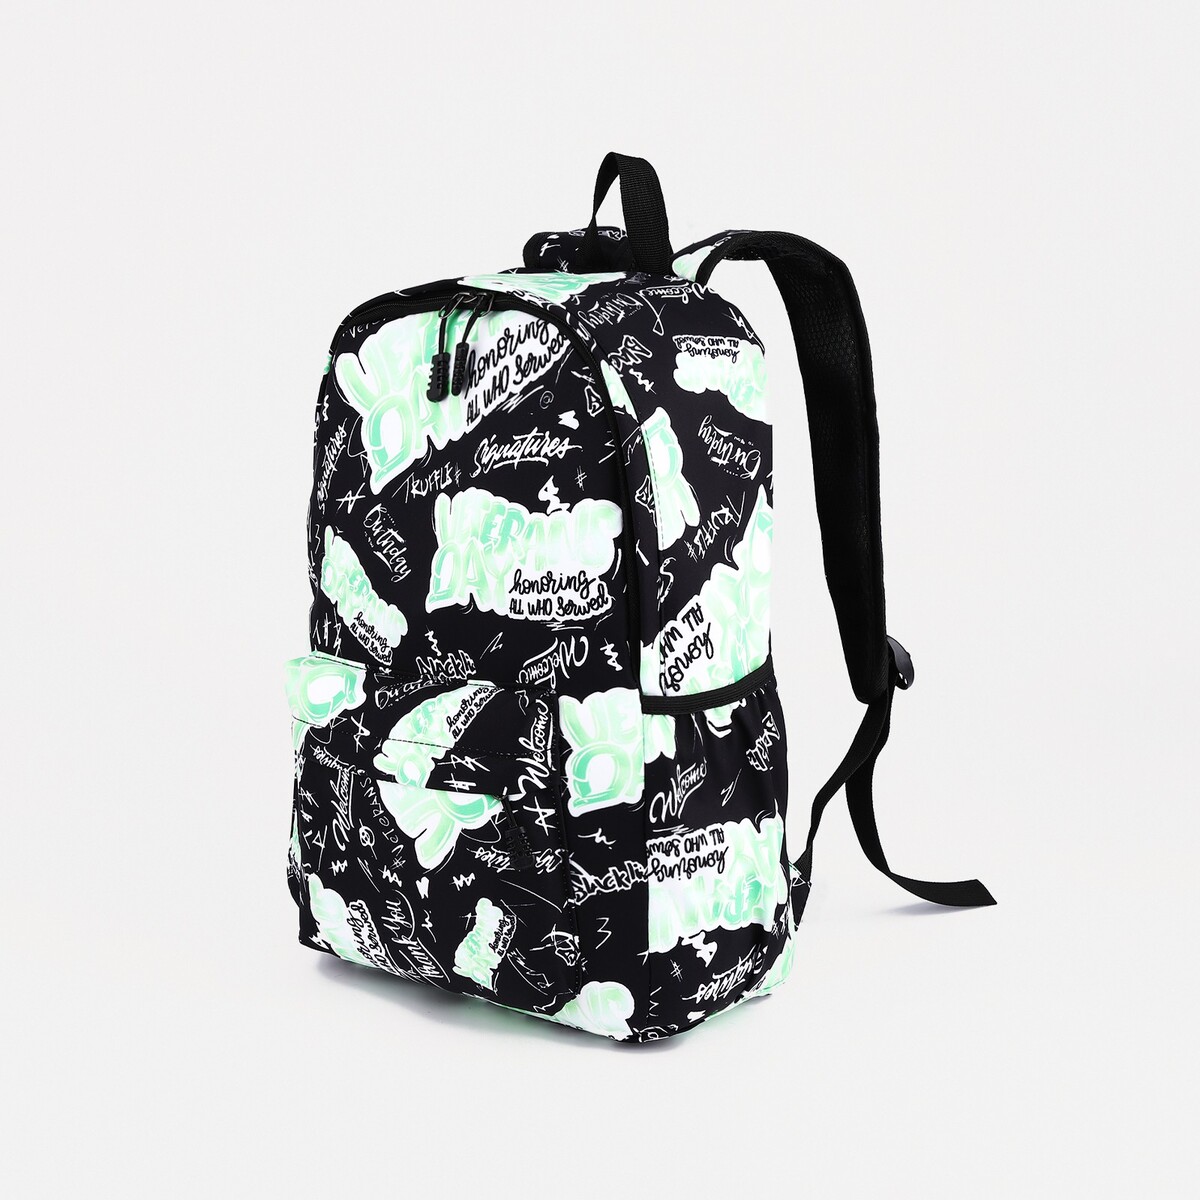 Рюкзак на молнии, 3 наружных кармана, цвет зеленый/черный рюкзак сумка на молнии 4 наружных кармана отделение для обуви зеленый